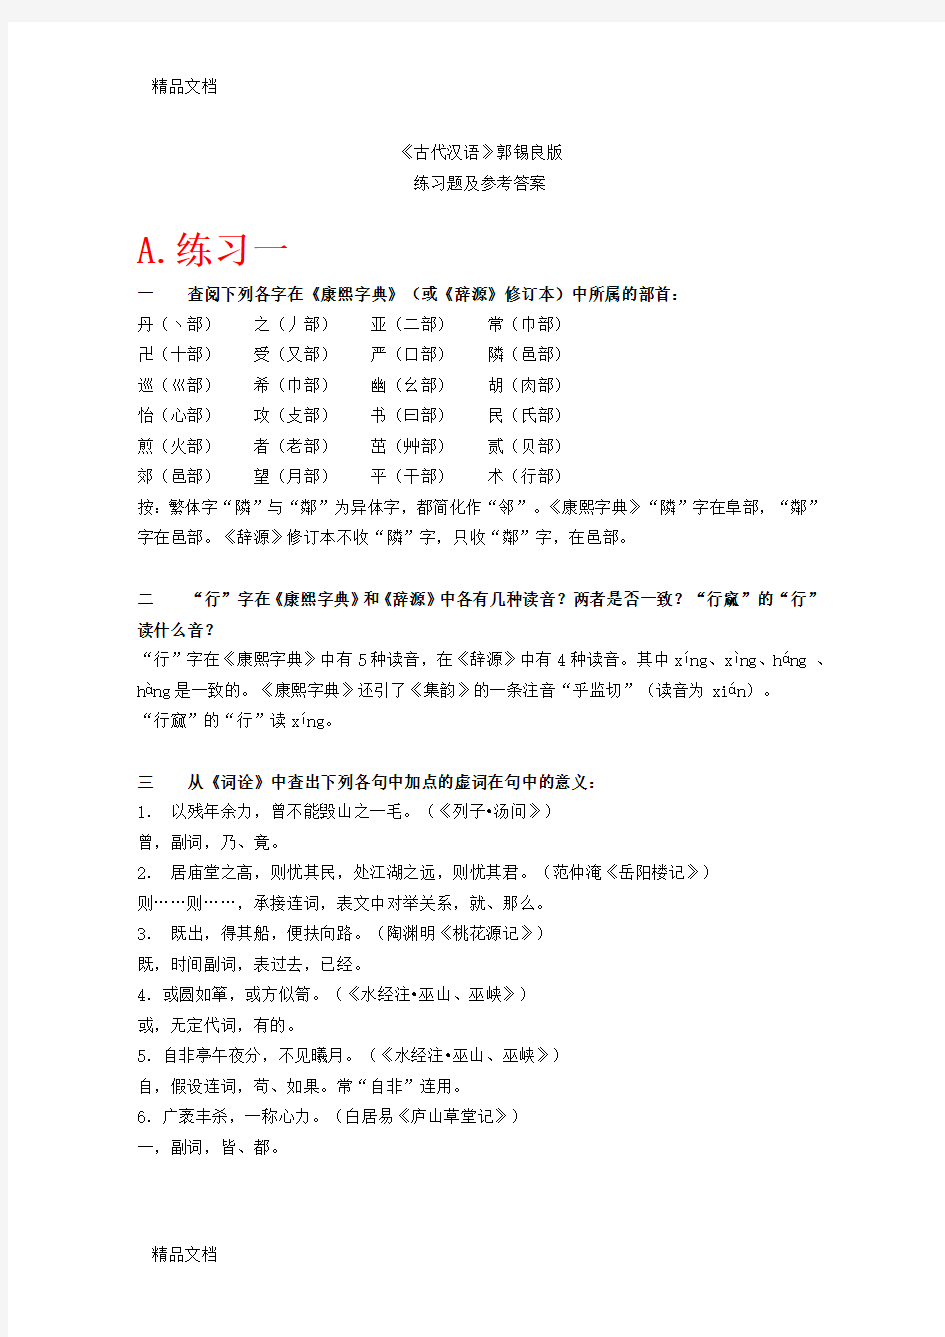 《古代汉语》上下册课后习题答案(全网最全,精心整理)上课讲义